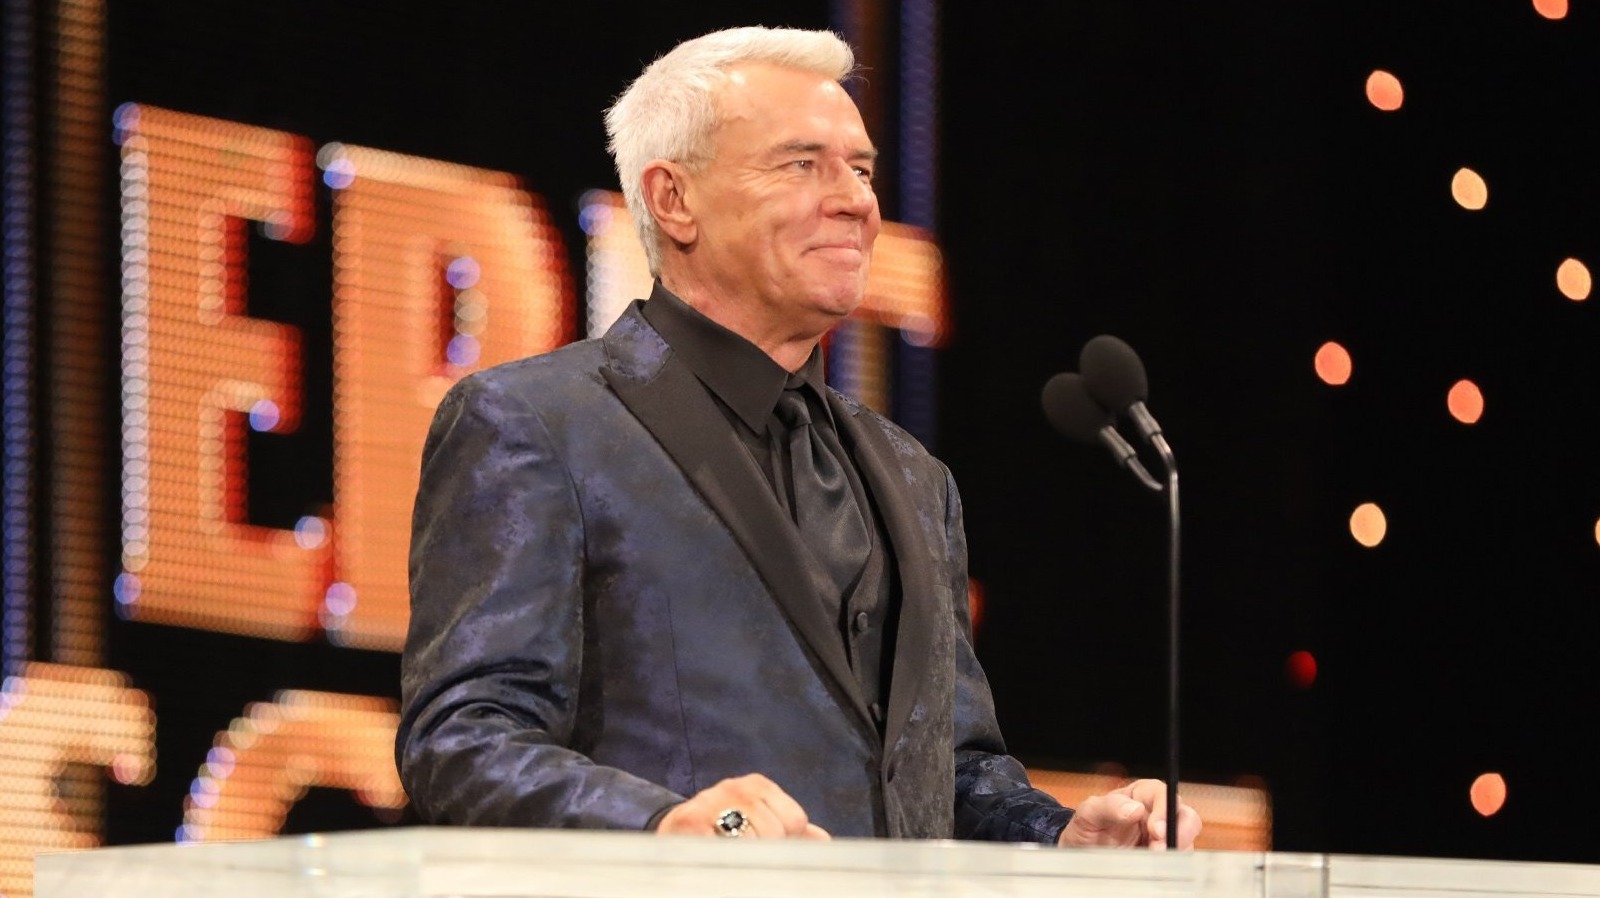 Eric Bischoff recuerda haber trabajado con Steve Austin durante la era de la agresión despiadada de la WWE